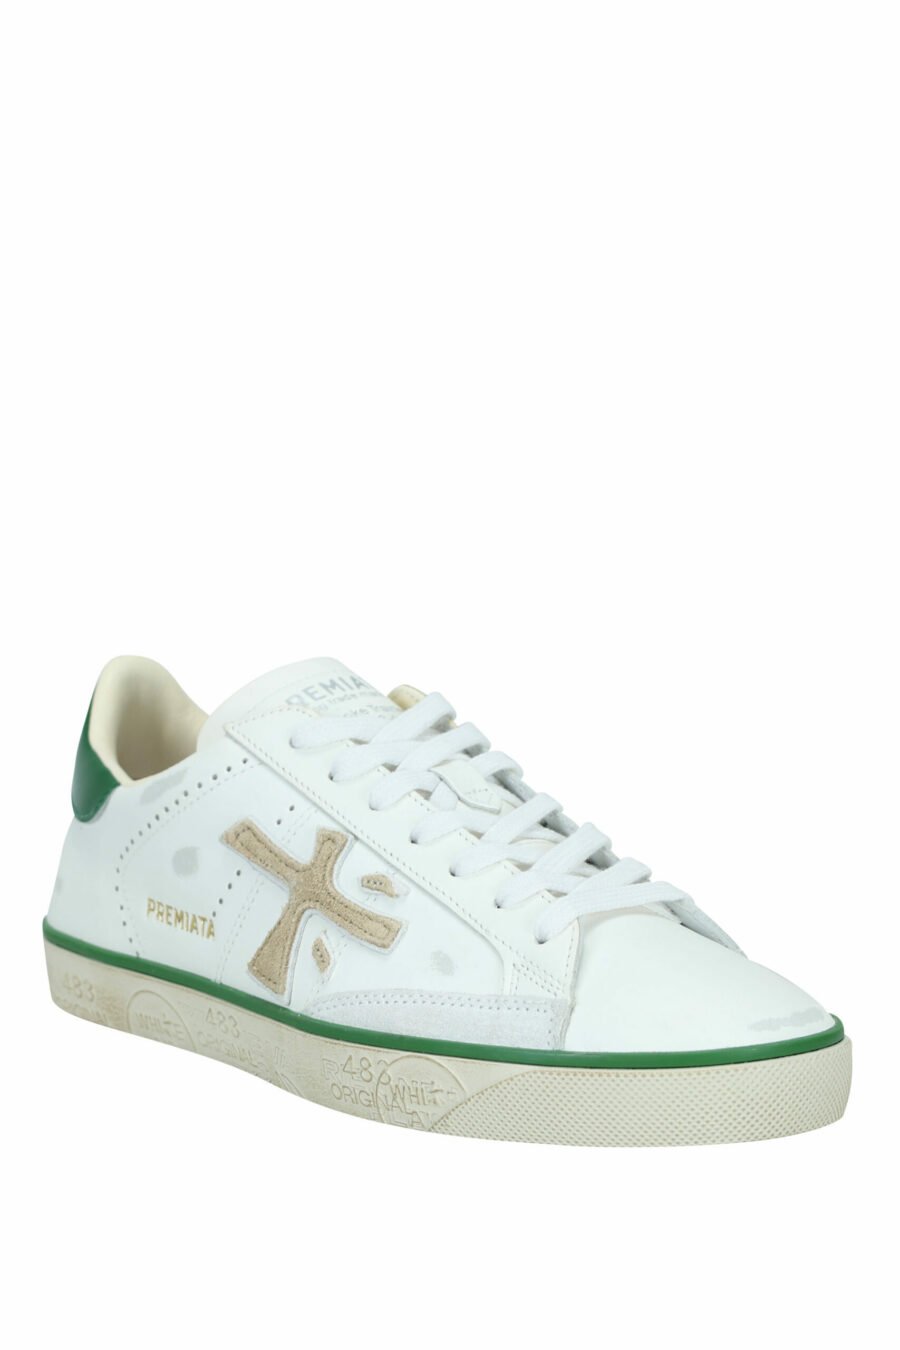 Chaussures blanches portées avec la mention verte "Steven 6645" - 8053680394497 1 à l'échelle